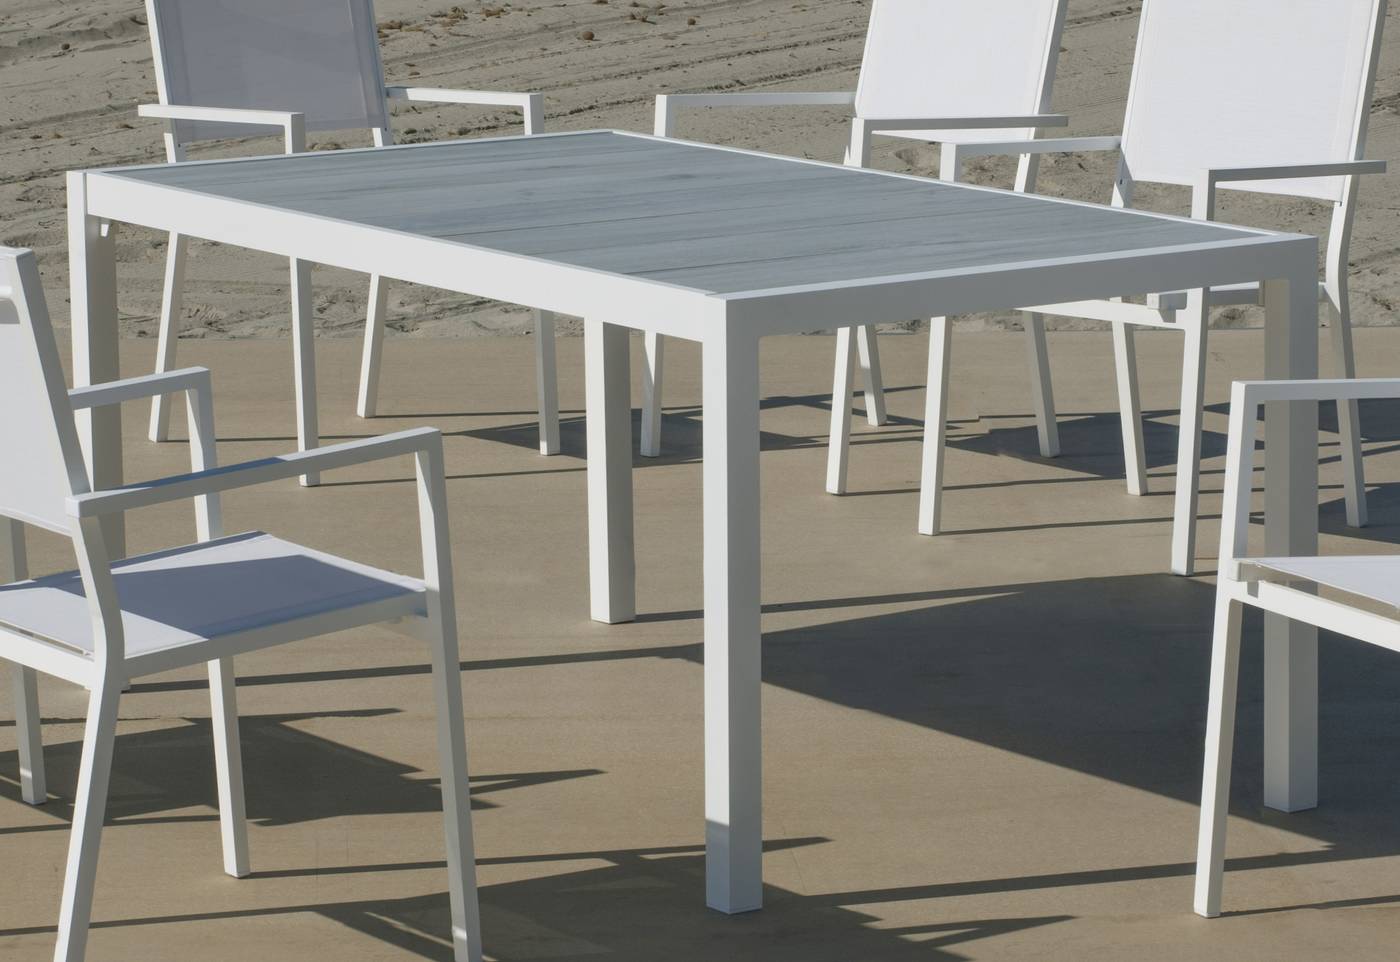 Set Palermo-160-6 Córcega - Conjunto de aluminio para jardín: Mesa rectangular con tablero cerámico de 160 cm + 6 sillones de textilen. Colores: blanco y antracita.